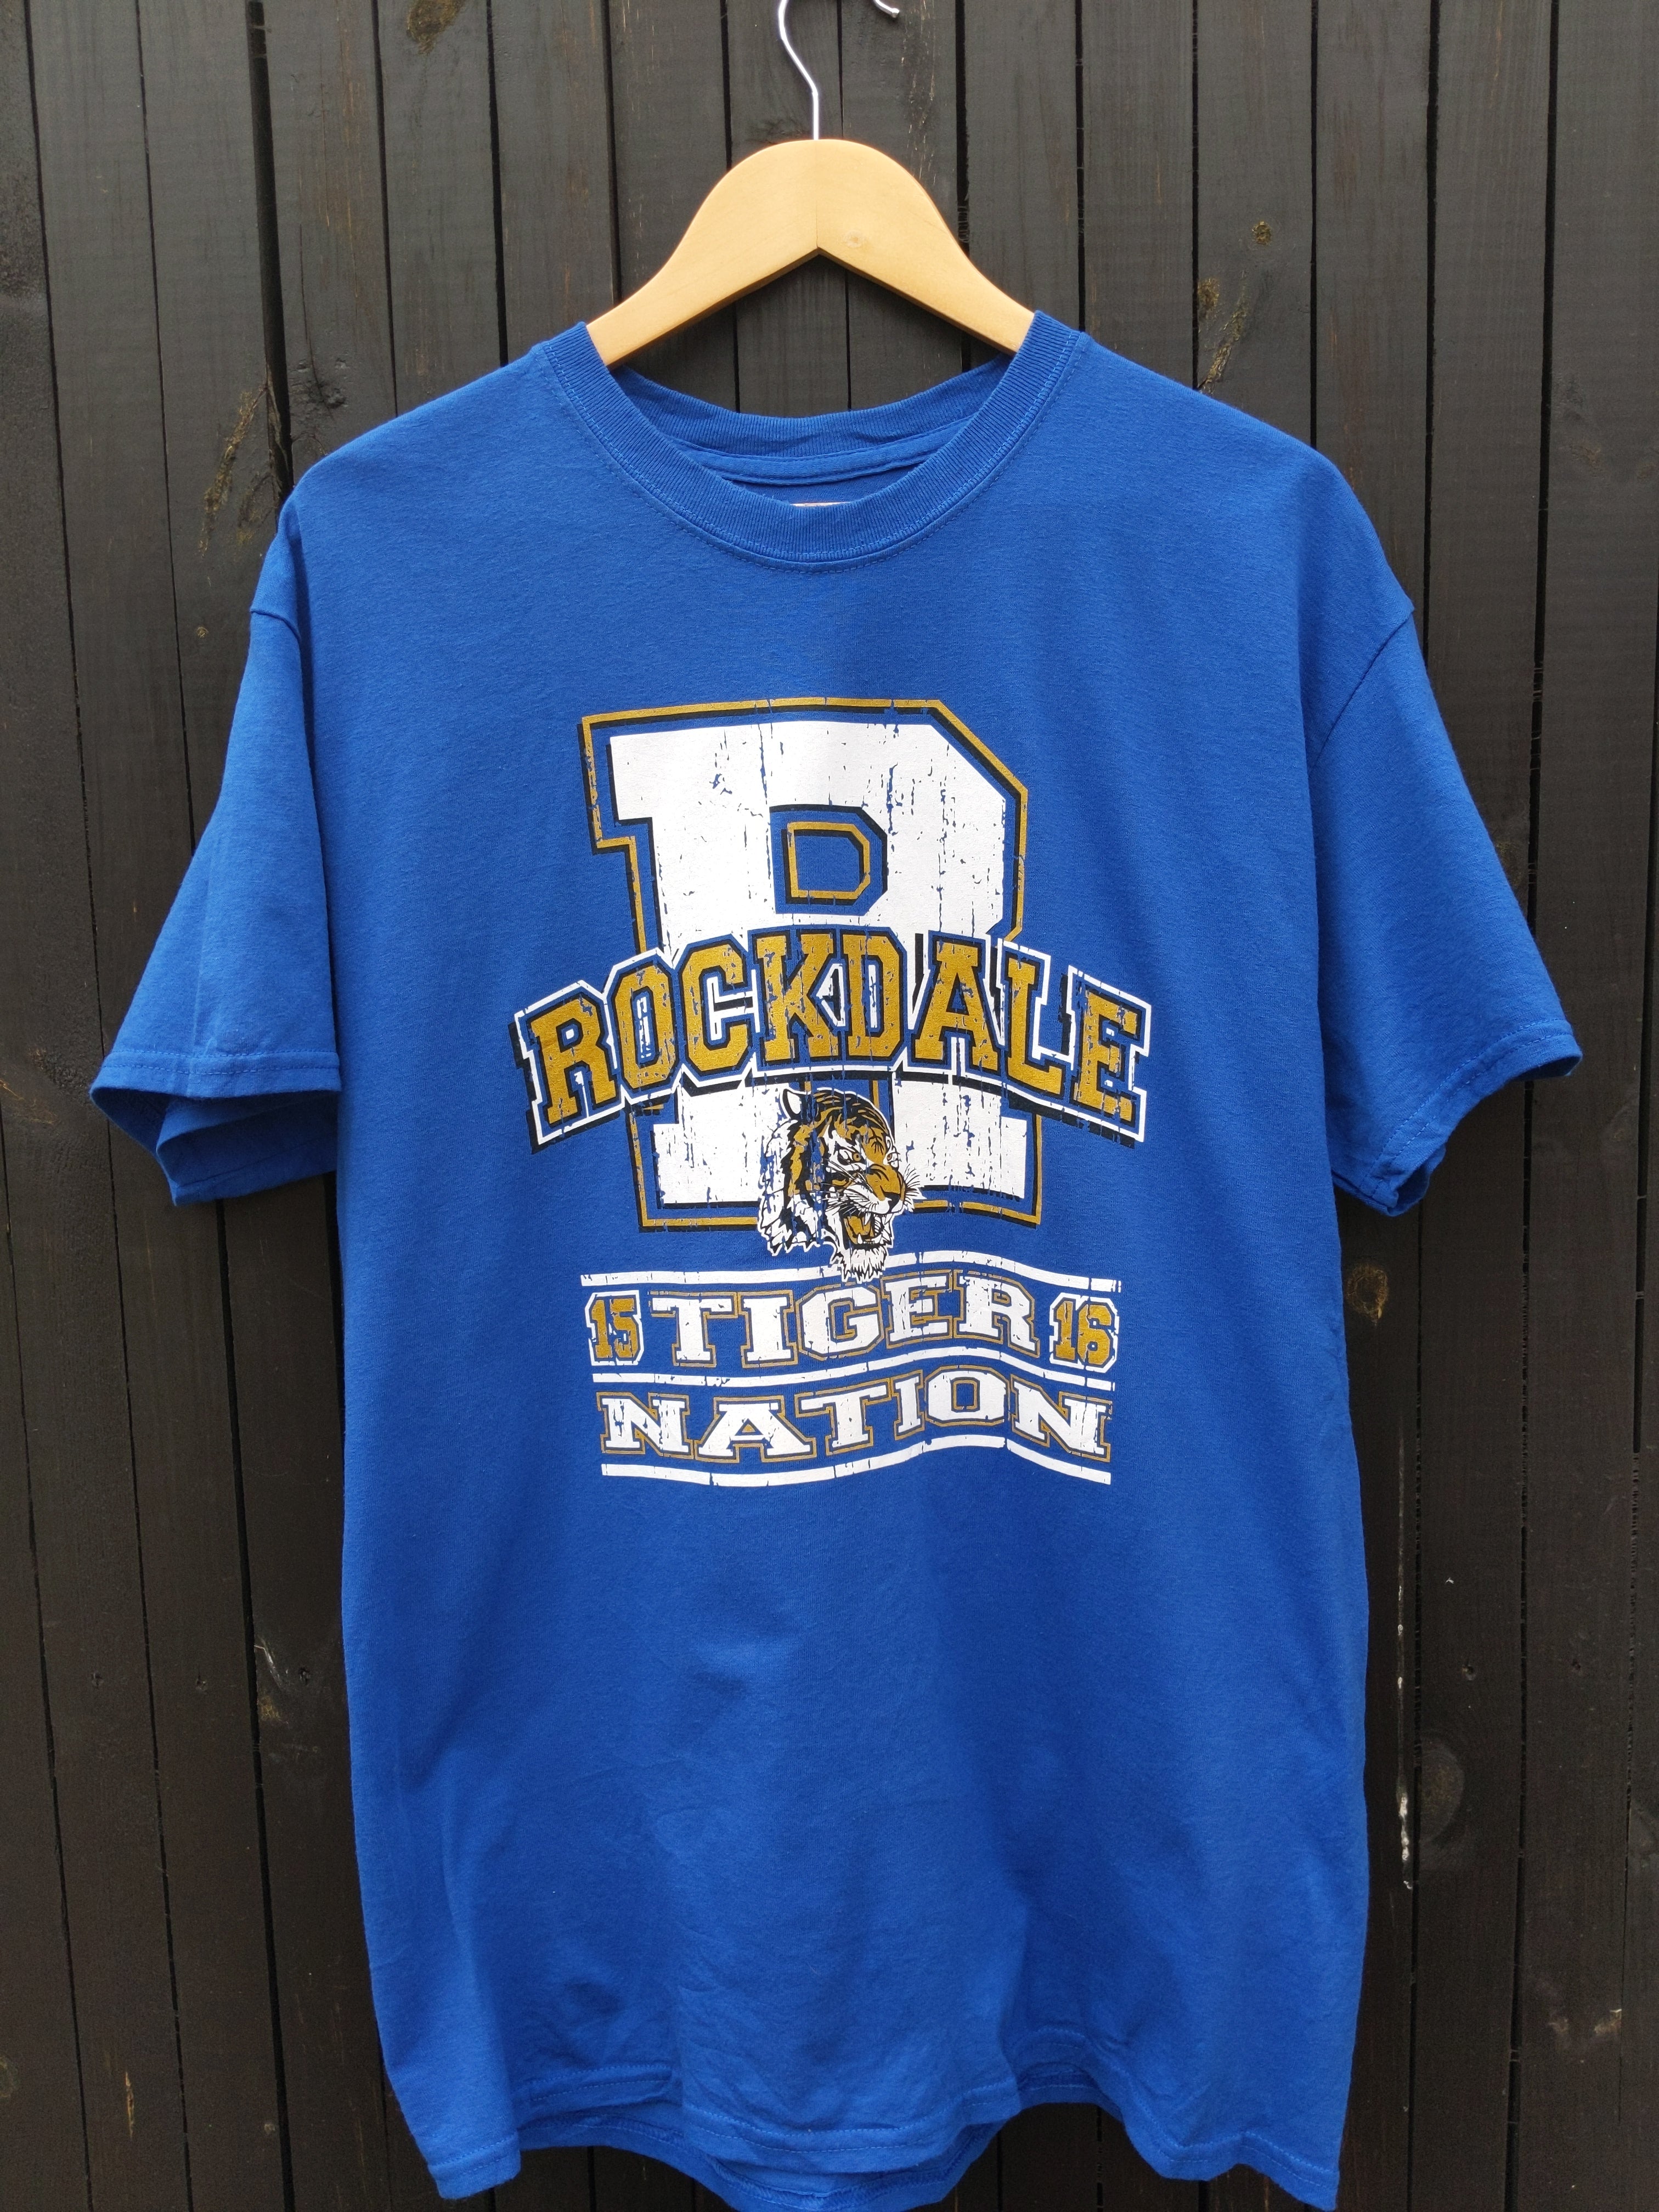 Rockdale tiger nation  t-shirt L